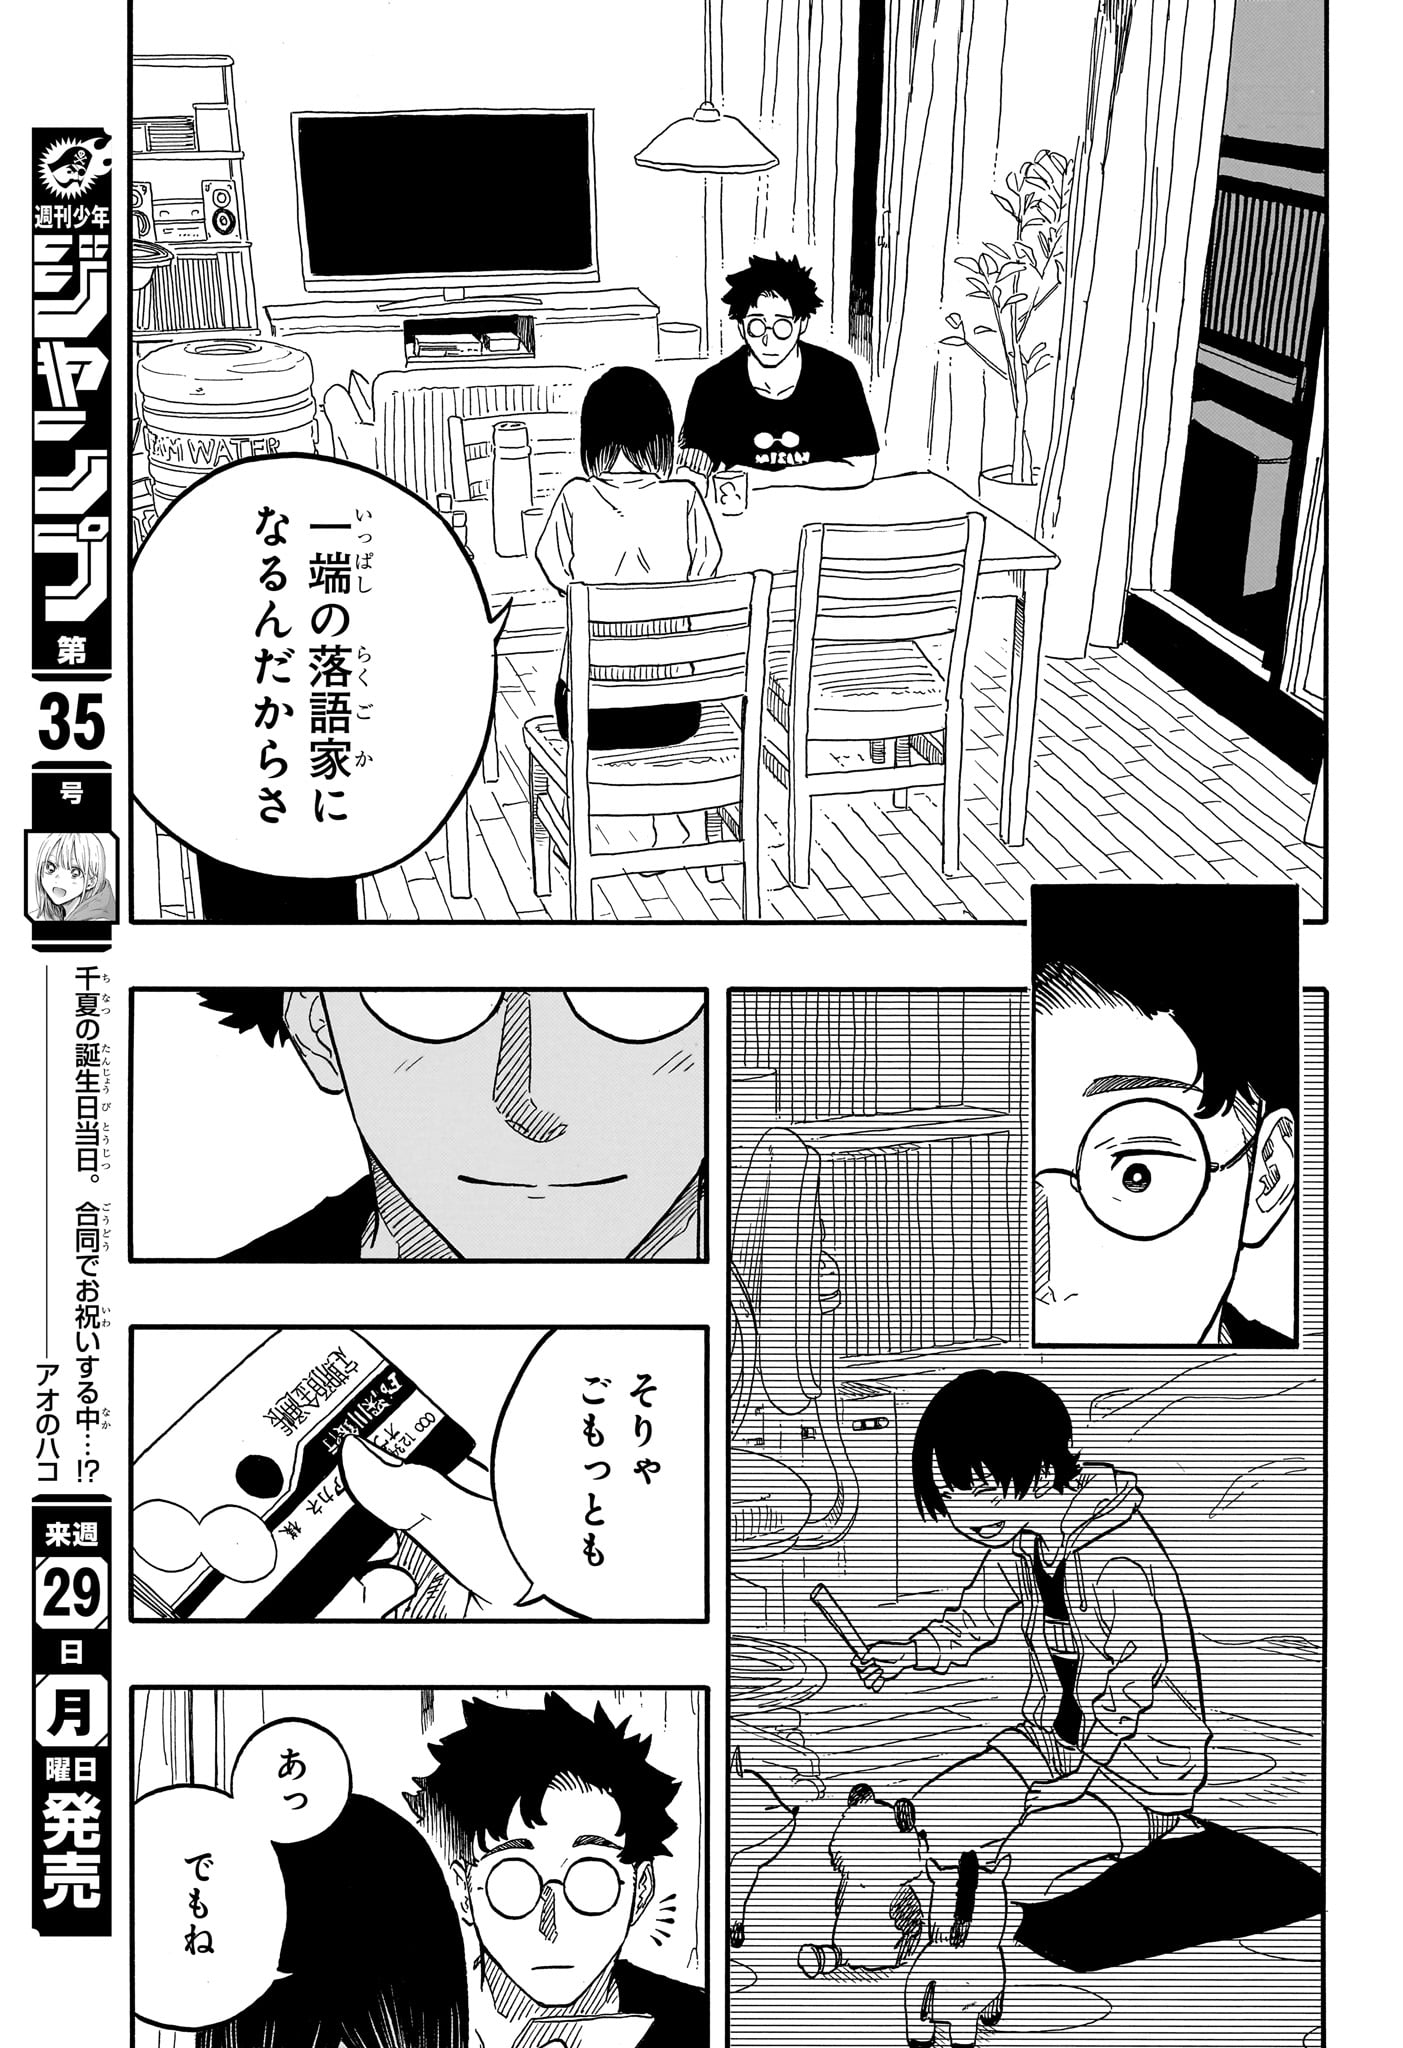 Akane-Banashi - Chapter 119 - Page 11